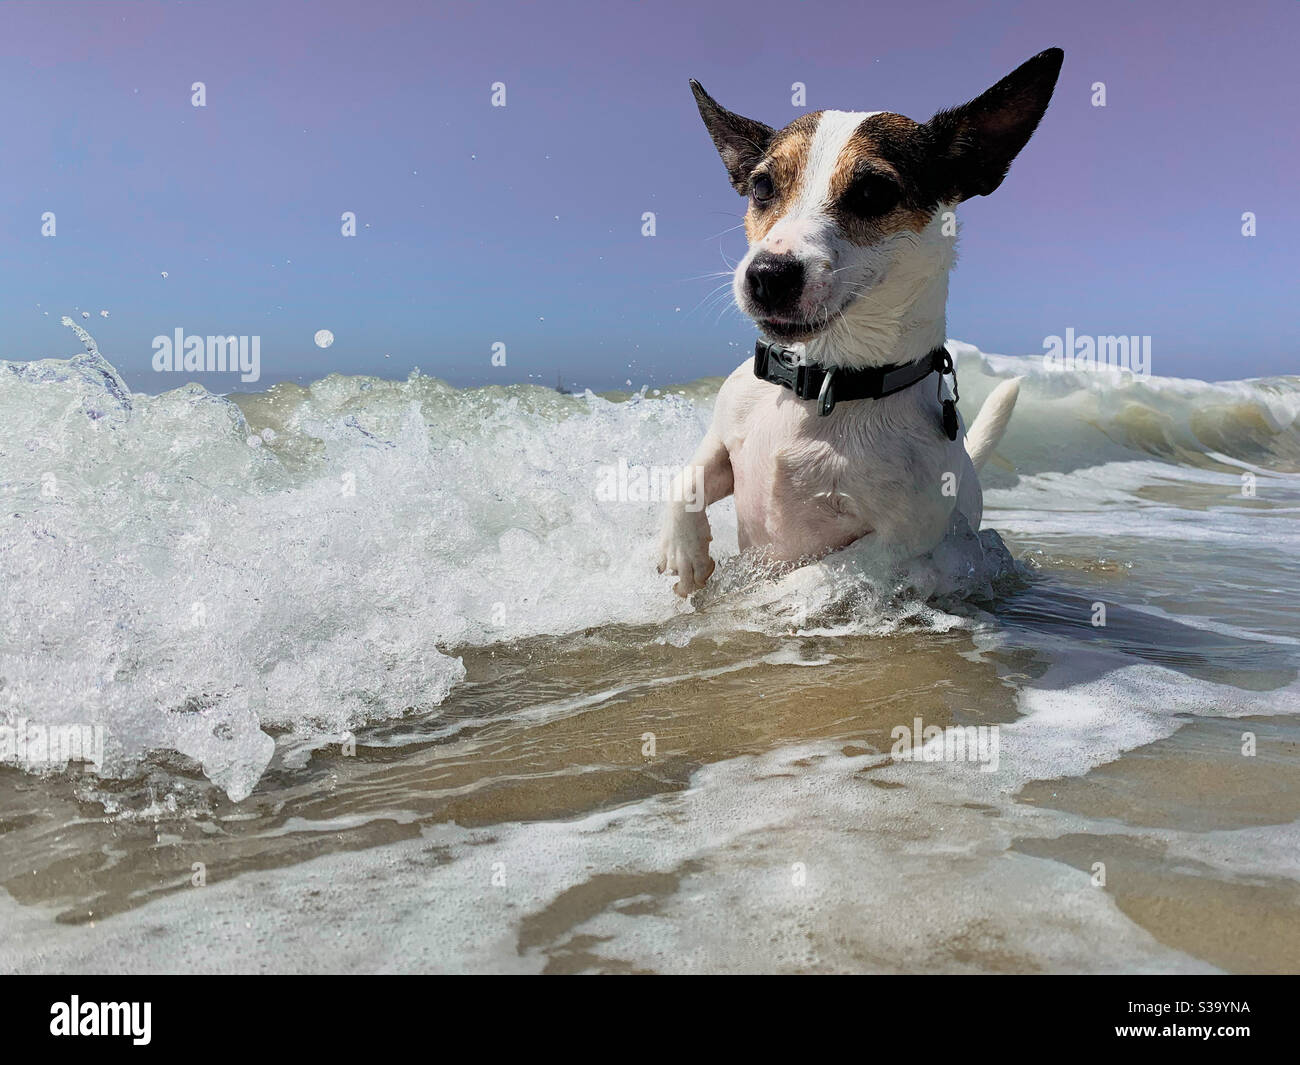 Glücklich aussehender Jack Russell Terrier Hund, der im seichten Wasser an einem sonnigen Strand spielt, während die Wellen sich einrollen. Stockfoto